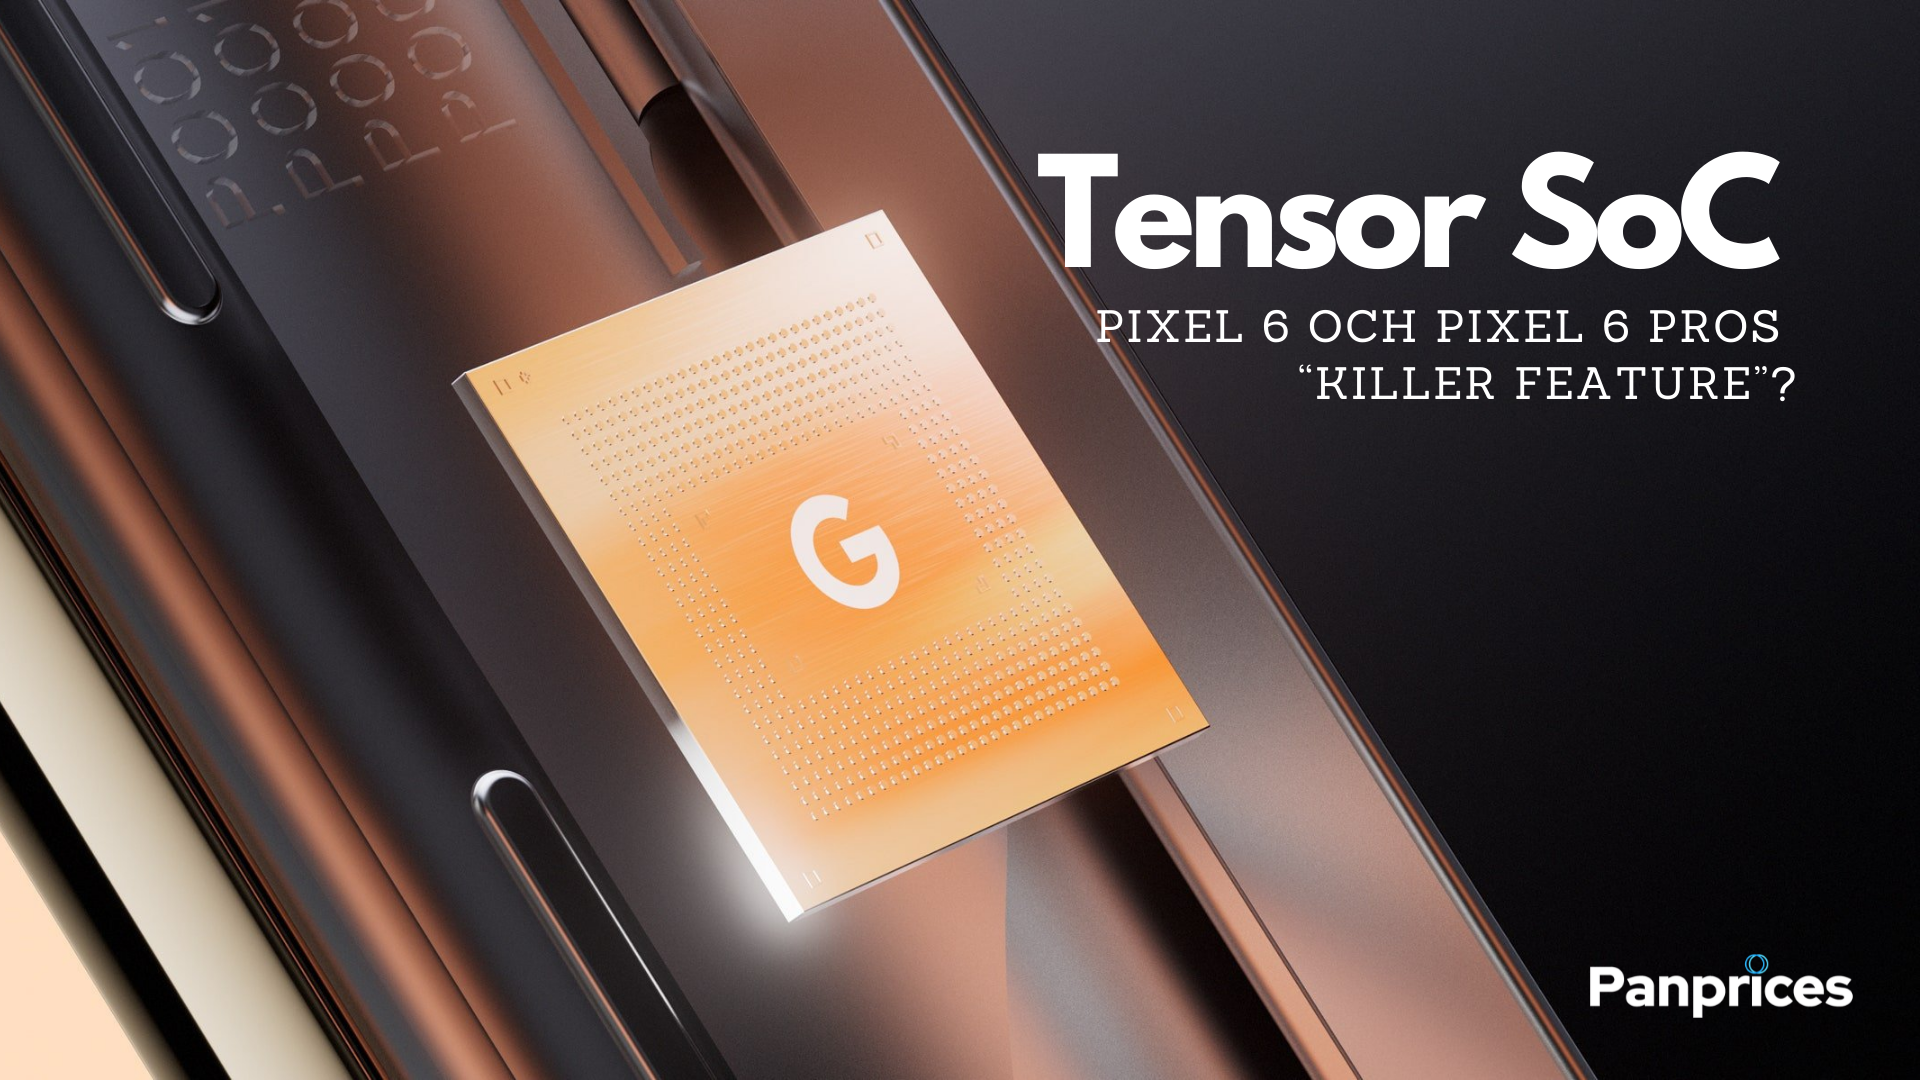 Tensor SoC: Pixel 6 och Pixel 6 Pros “killer feature”?